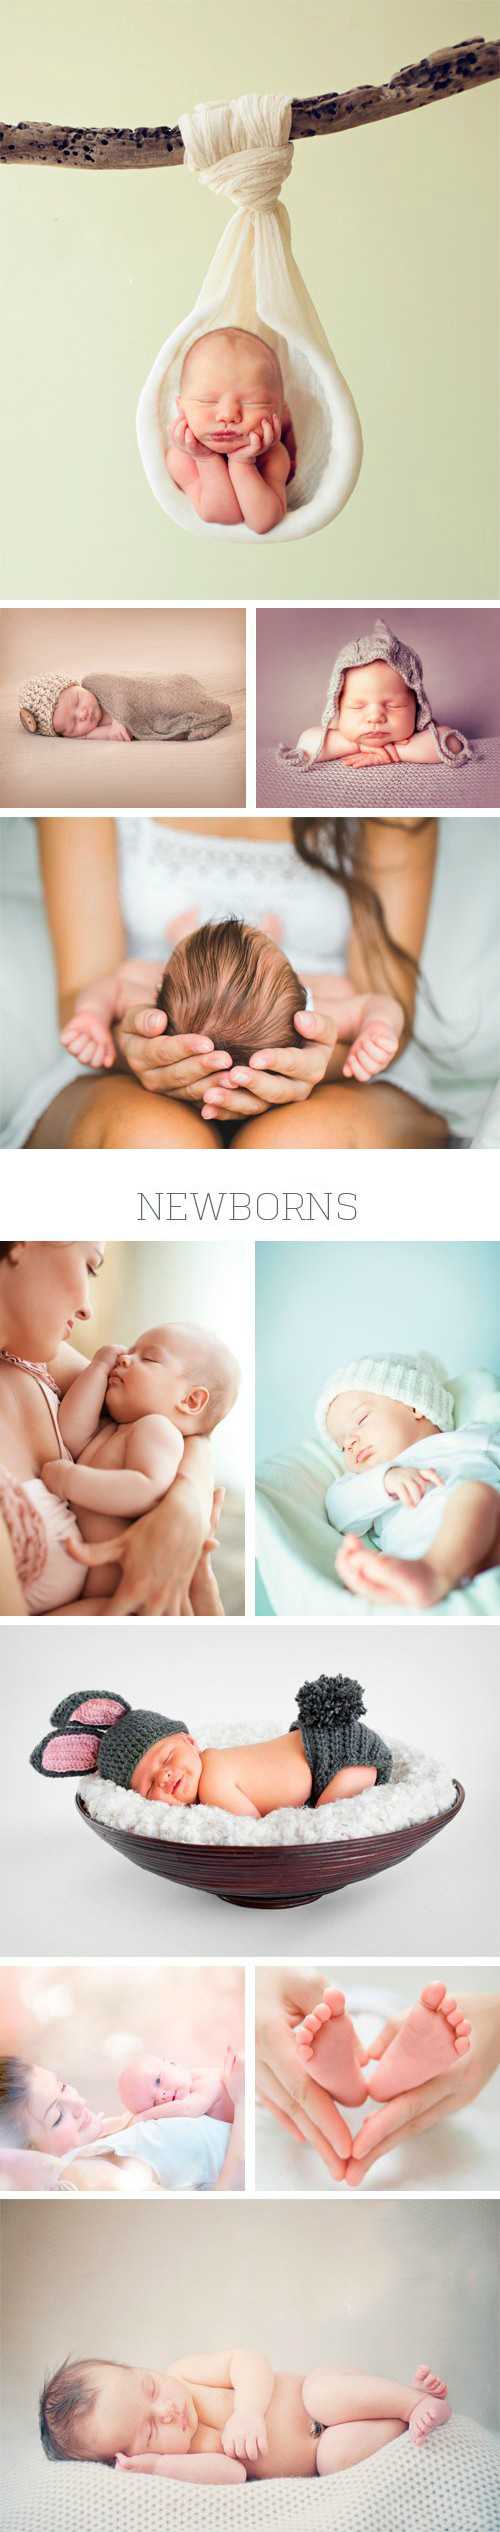 Фото младенцев \ Newborns, 25 x JPG